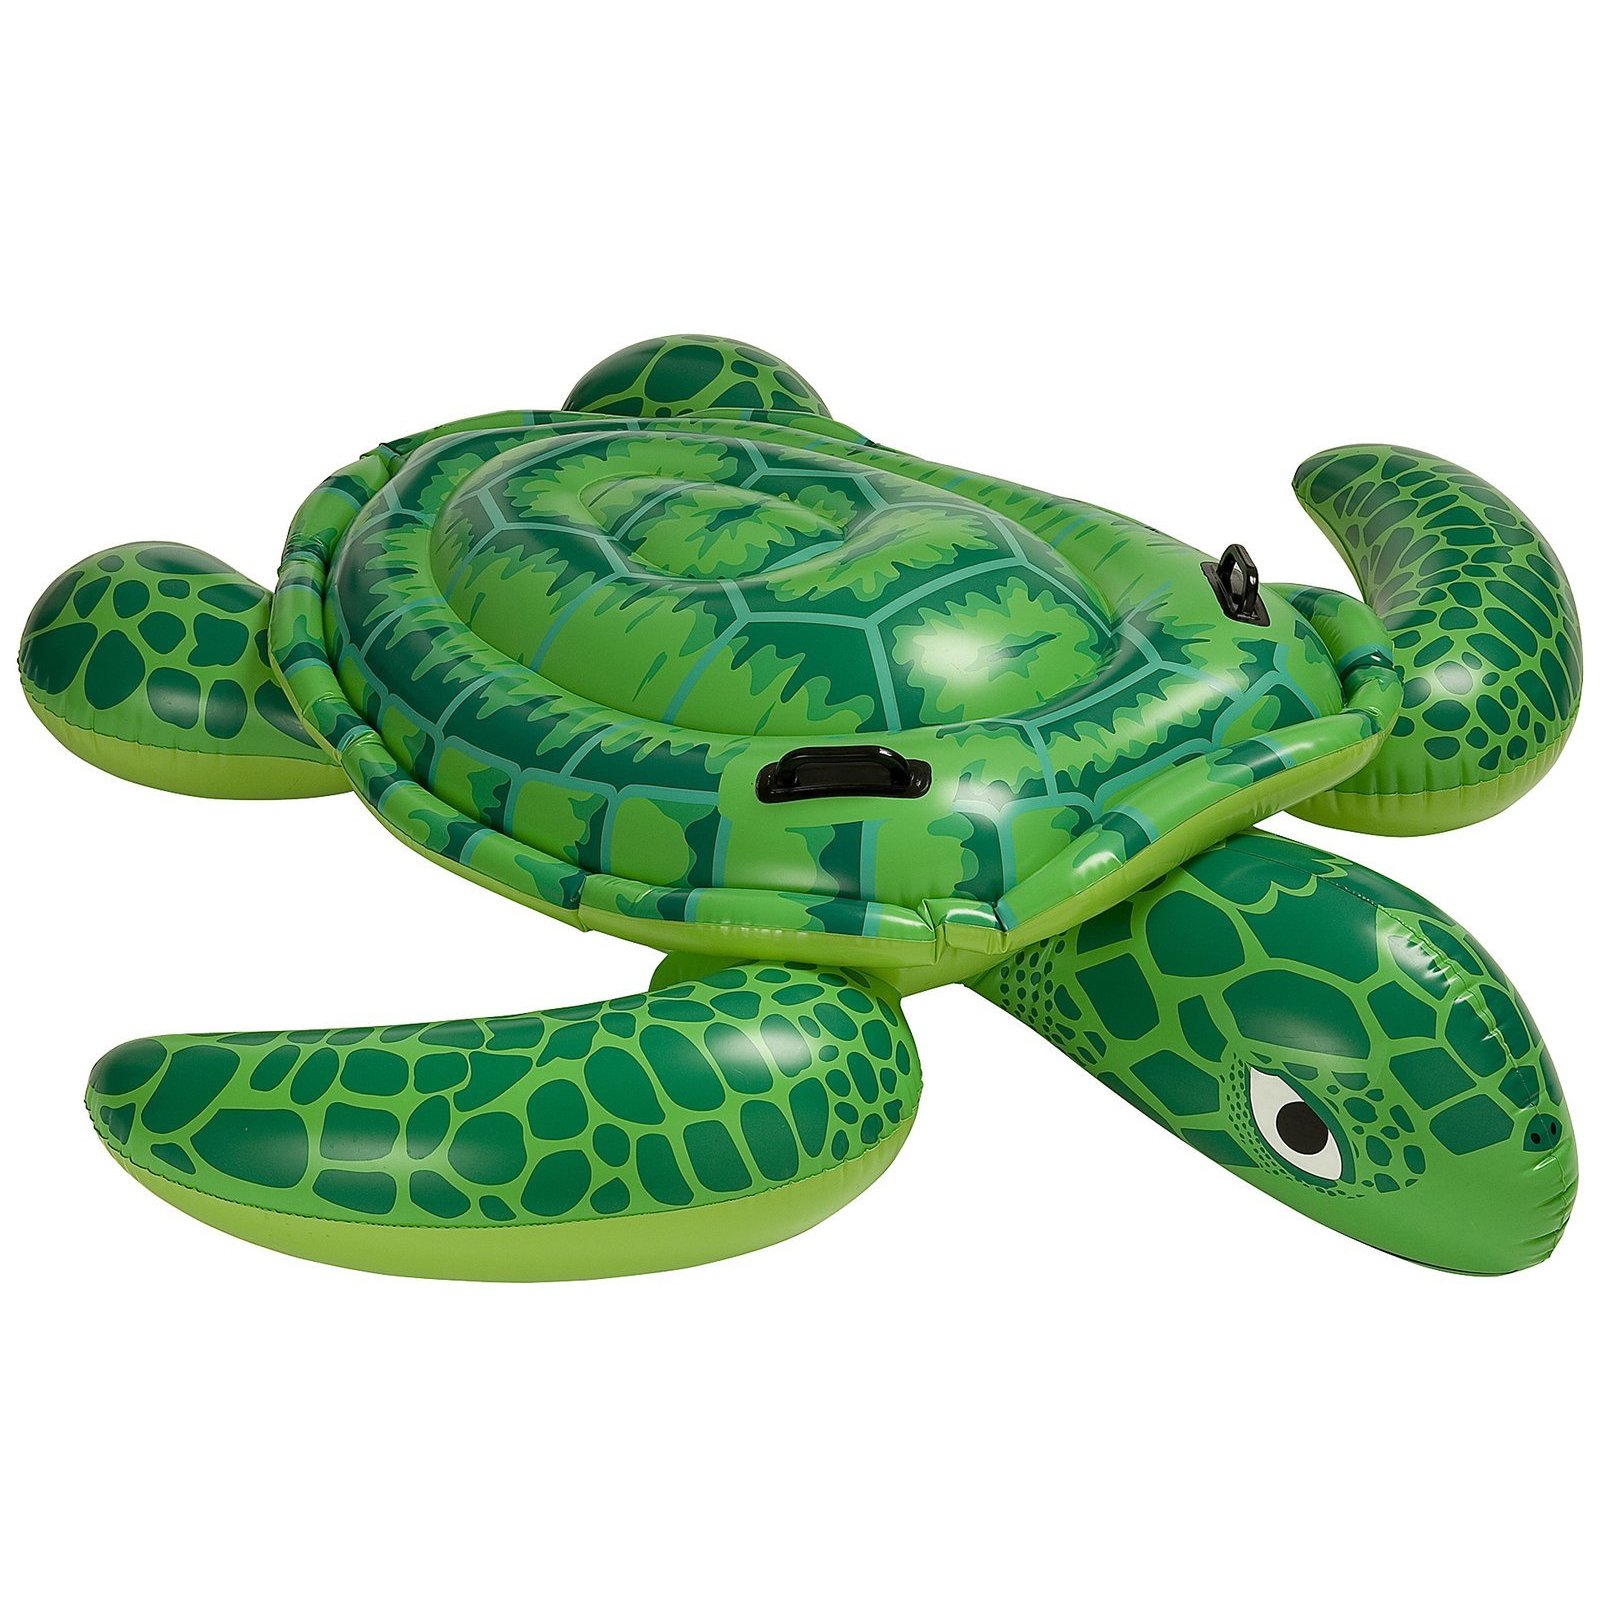 Intex Sea Turtle Inflatable Ride on